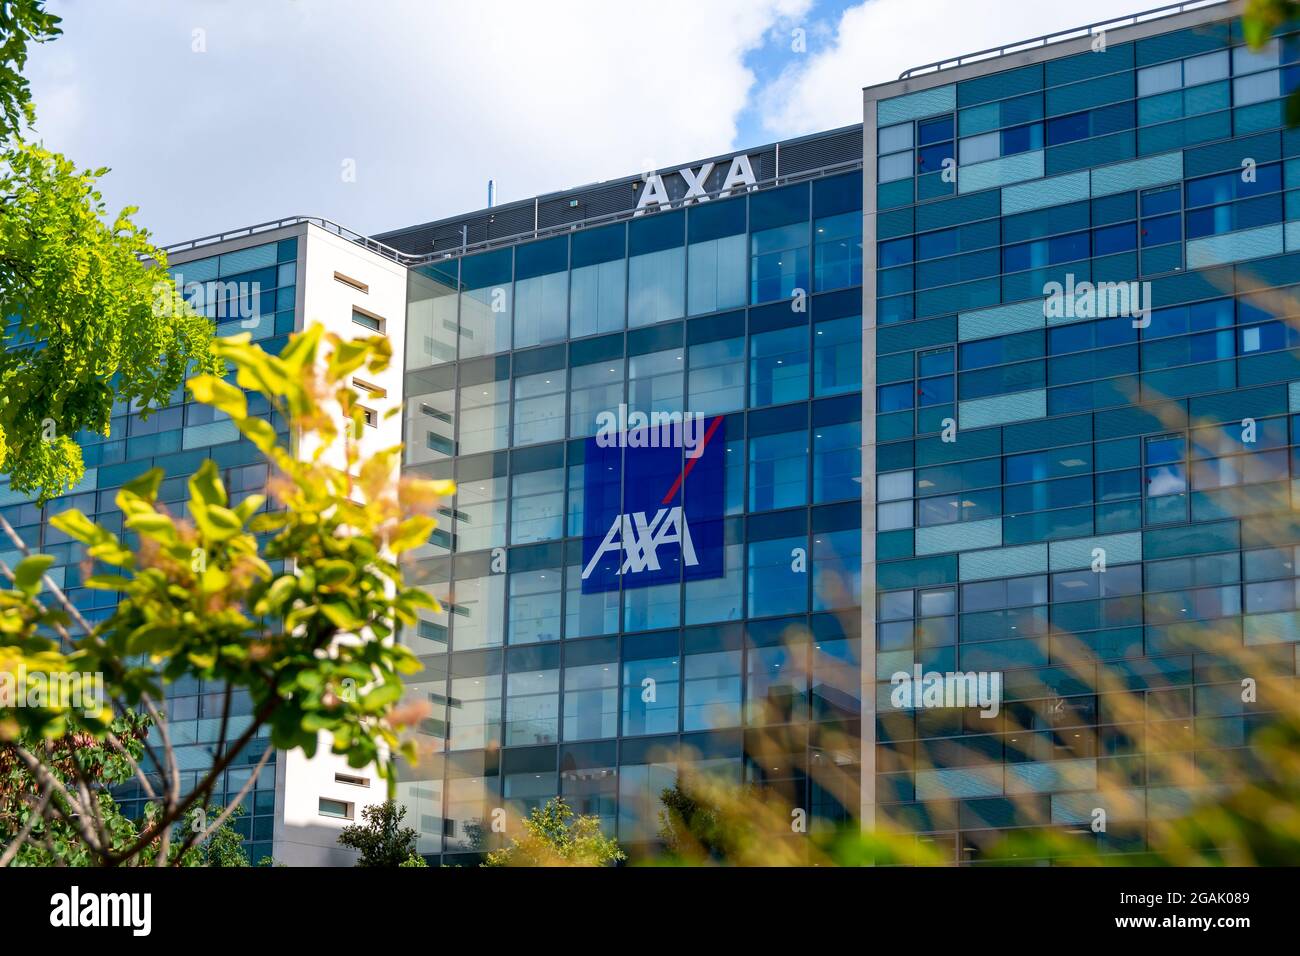 Vista esterna dell'edificio che ospita la sede di AXA, un gruppo internazionale francese specializzato in assicurazioni e gestione patrimoniale Foto Stock